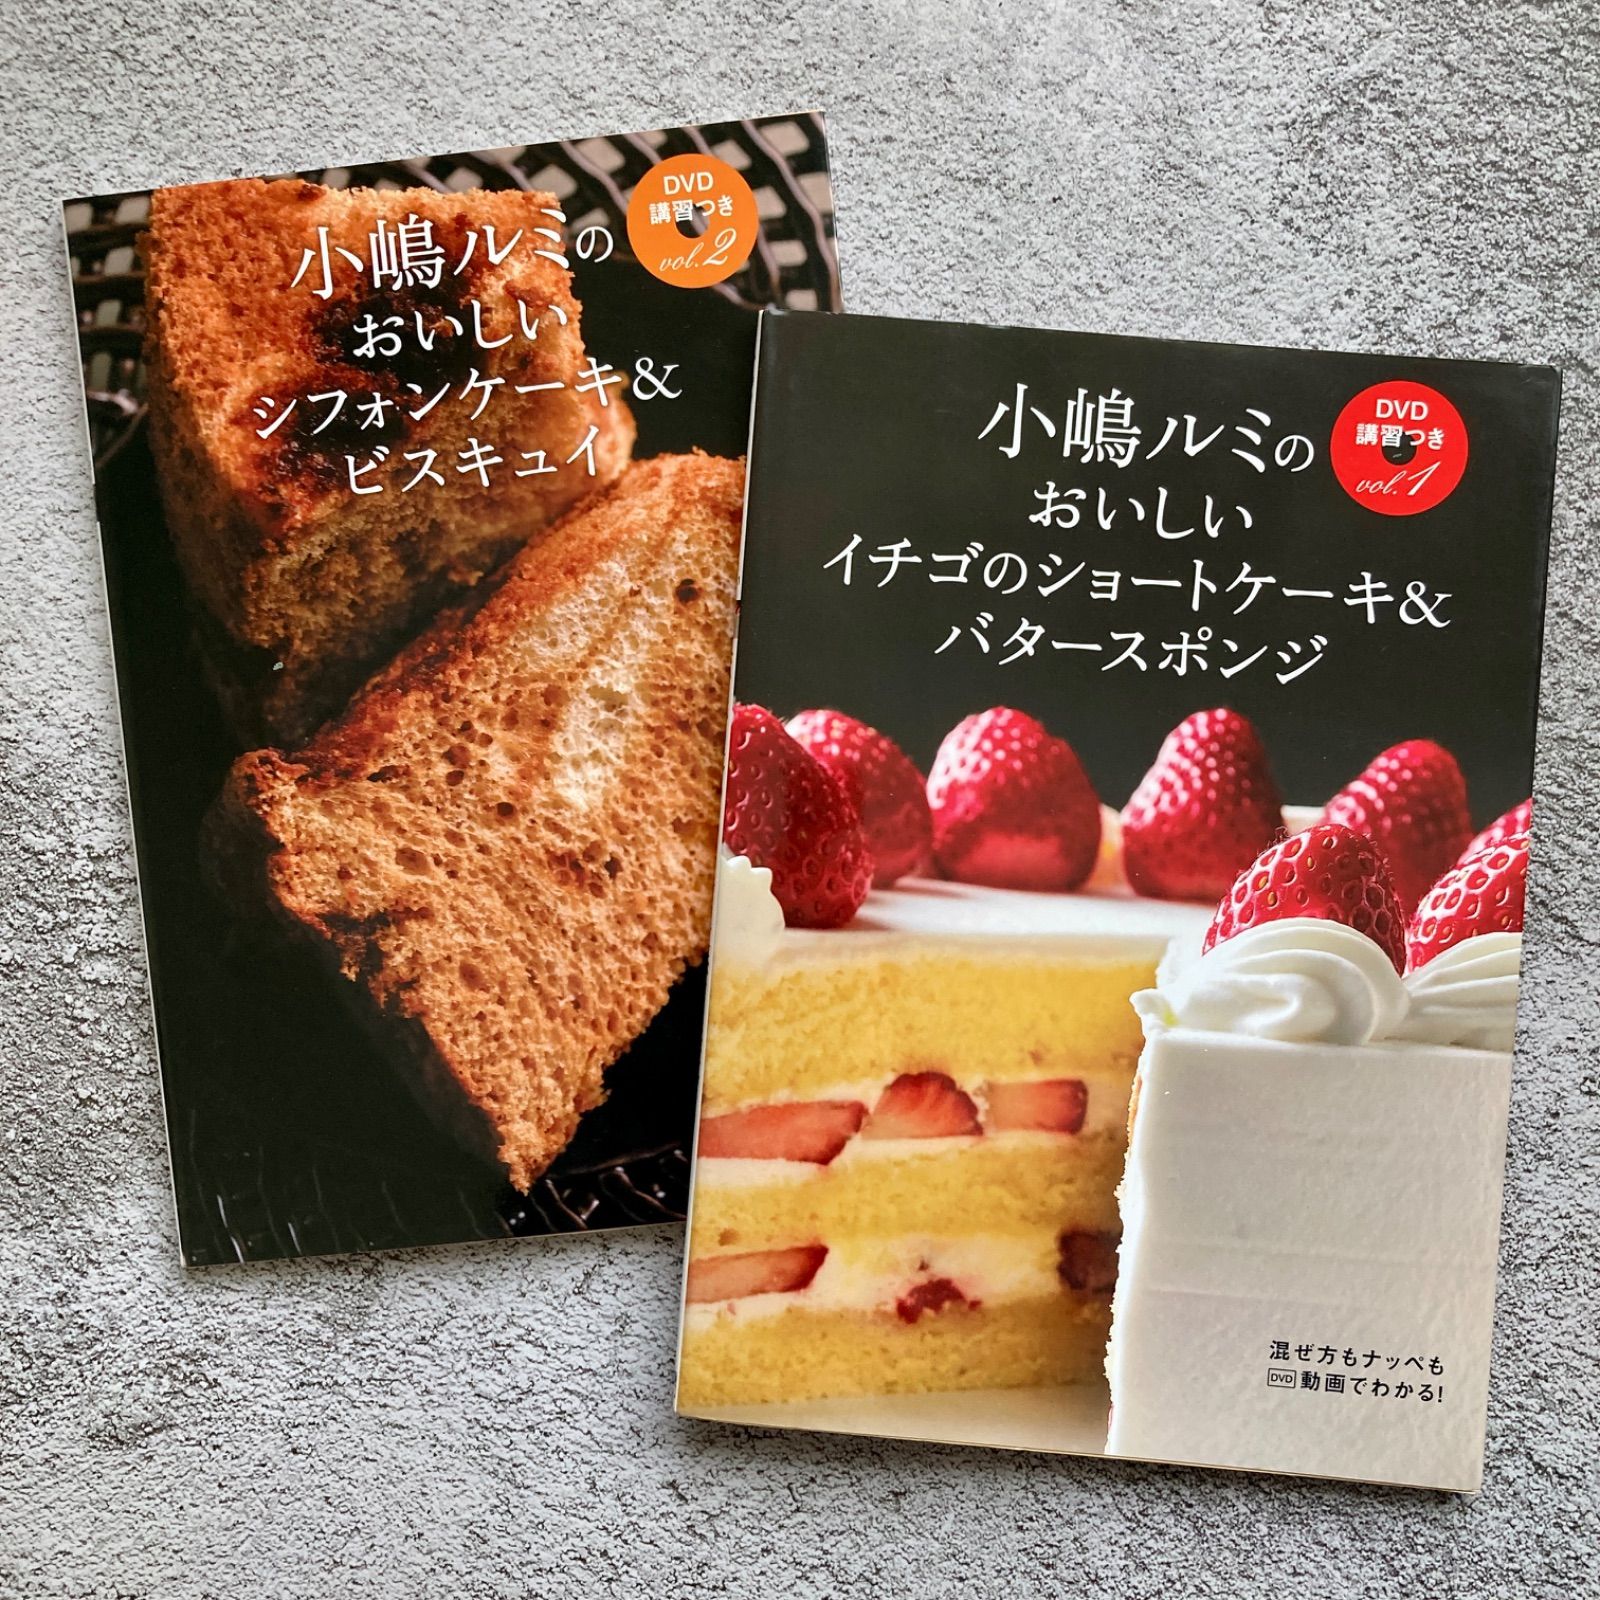 小嶋ルミのおいしいイチゴのショートケーキ&バタースポンジ 他2冊